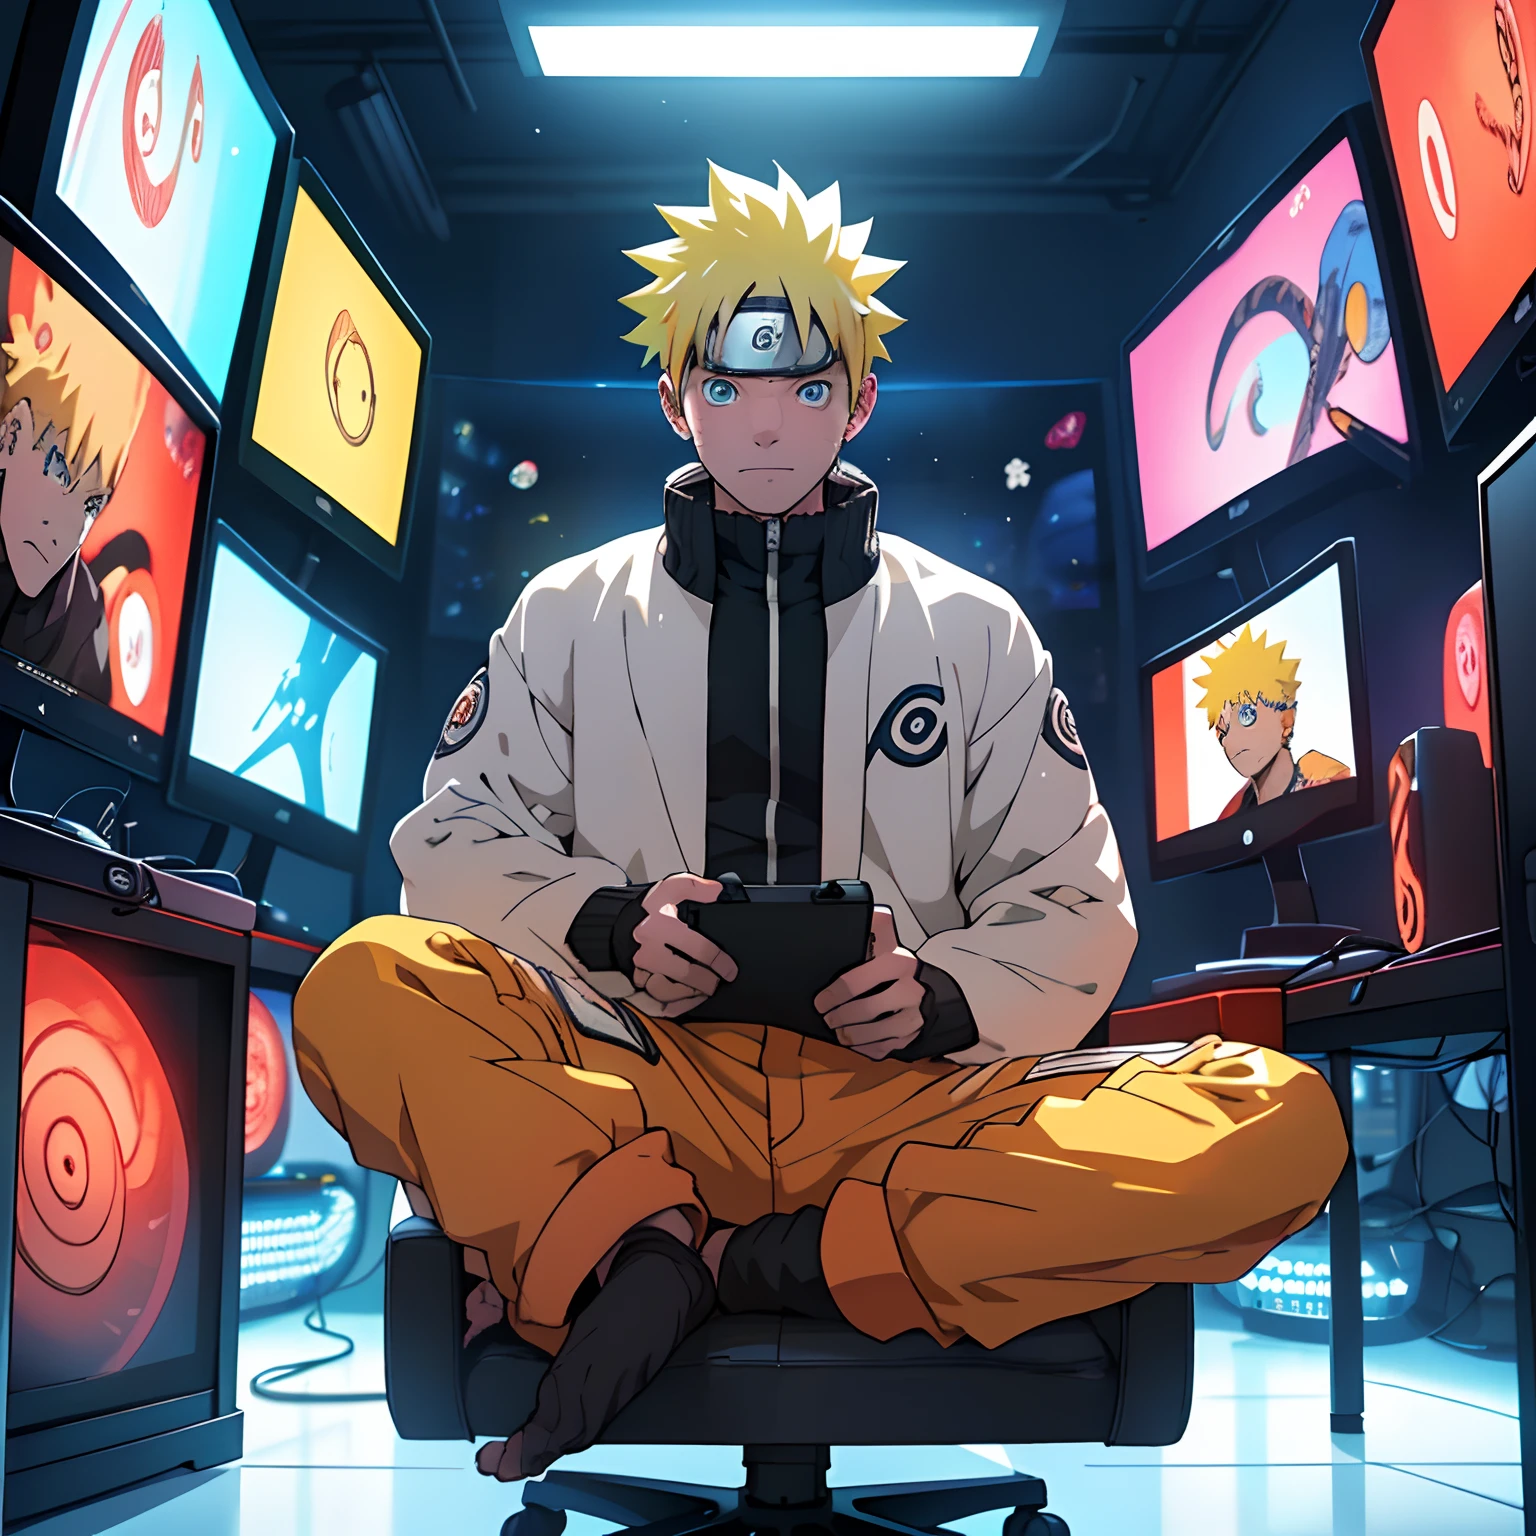 最高品質: 1.0), (超高解像度: 1.0), アニメ少年, 短い黄色の髪, 青い目, コンピューターの前に座ってゲームをする, eスポーツルームの背景, uzumaki naruto